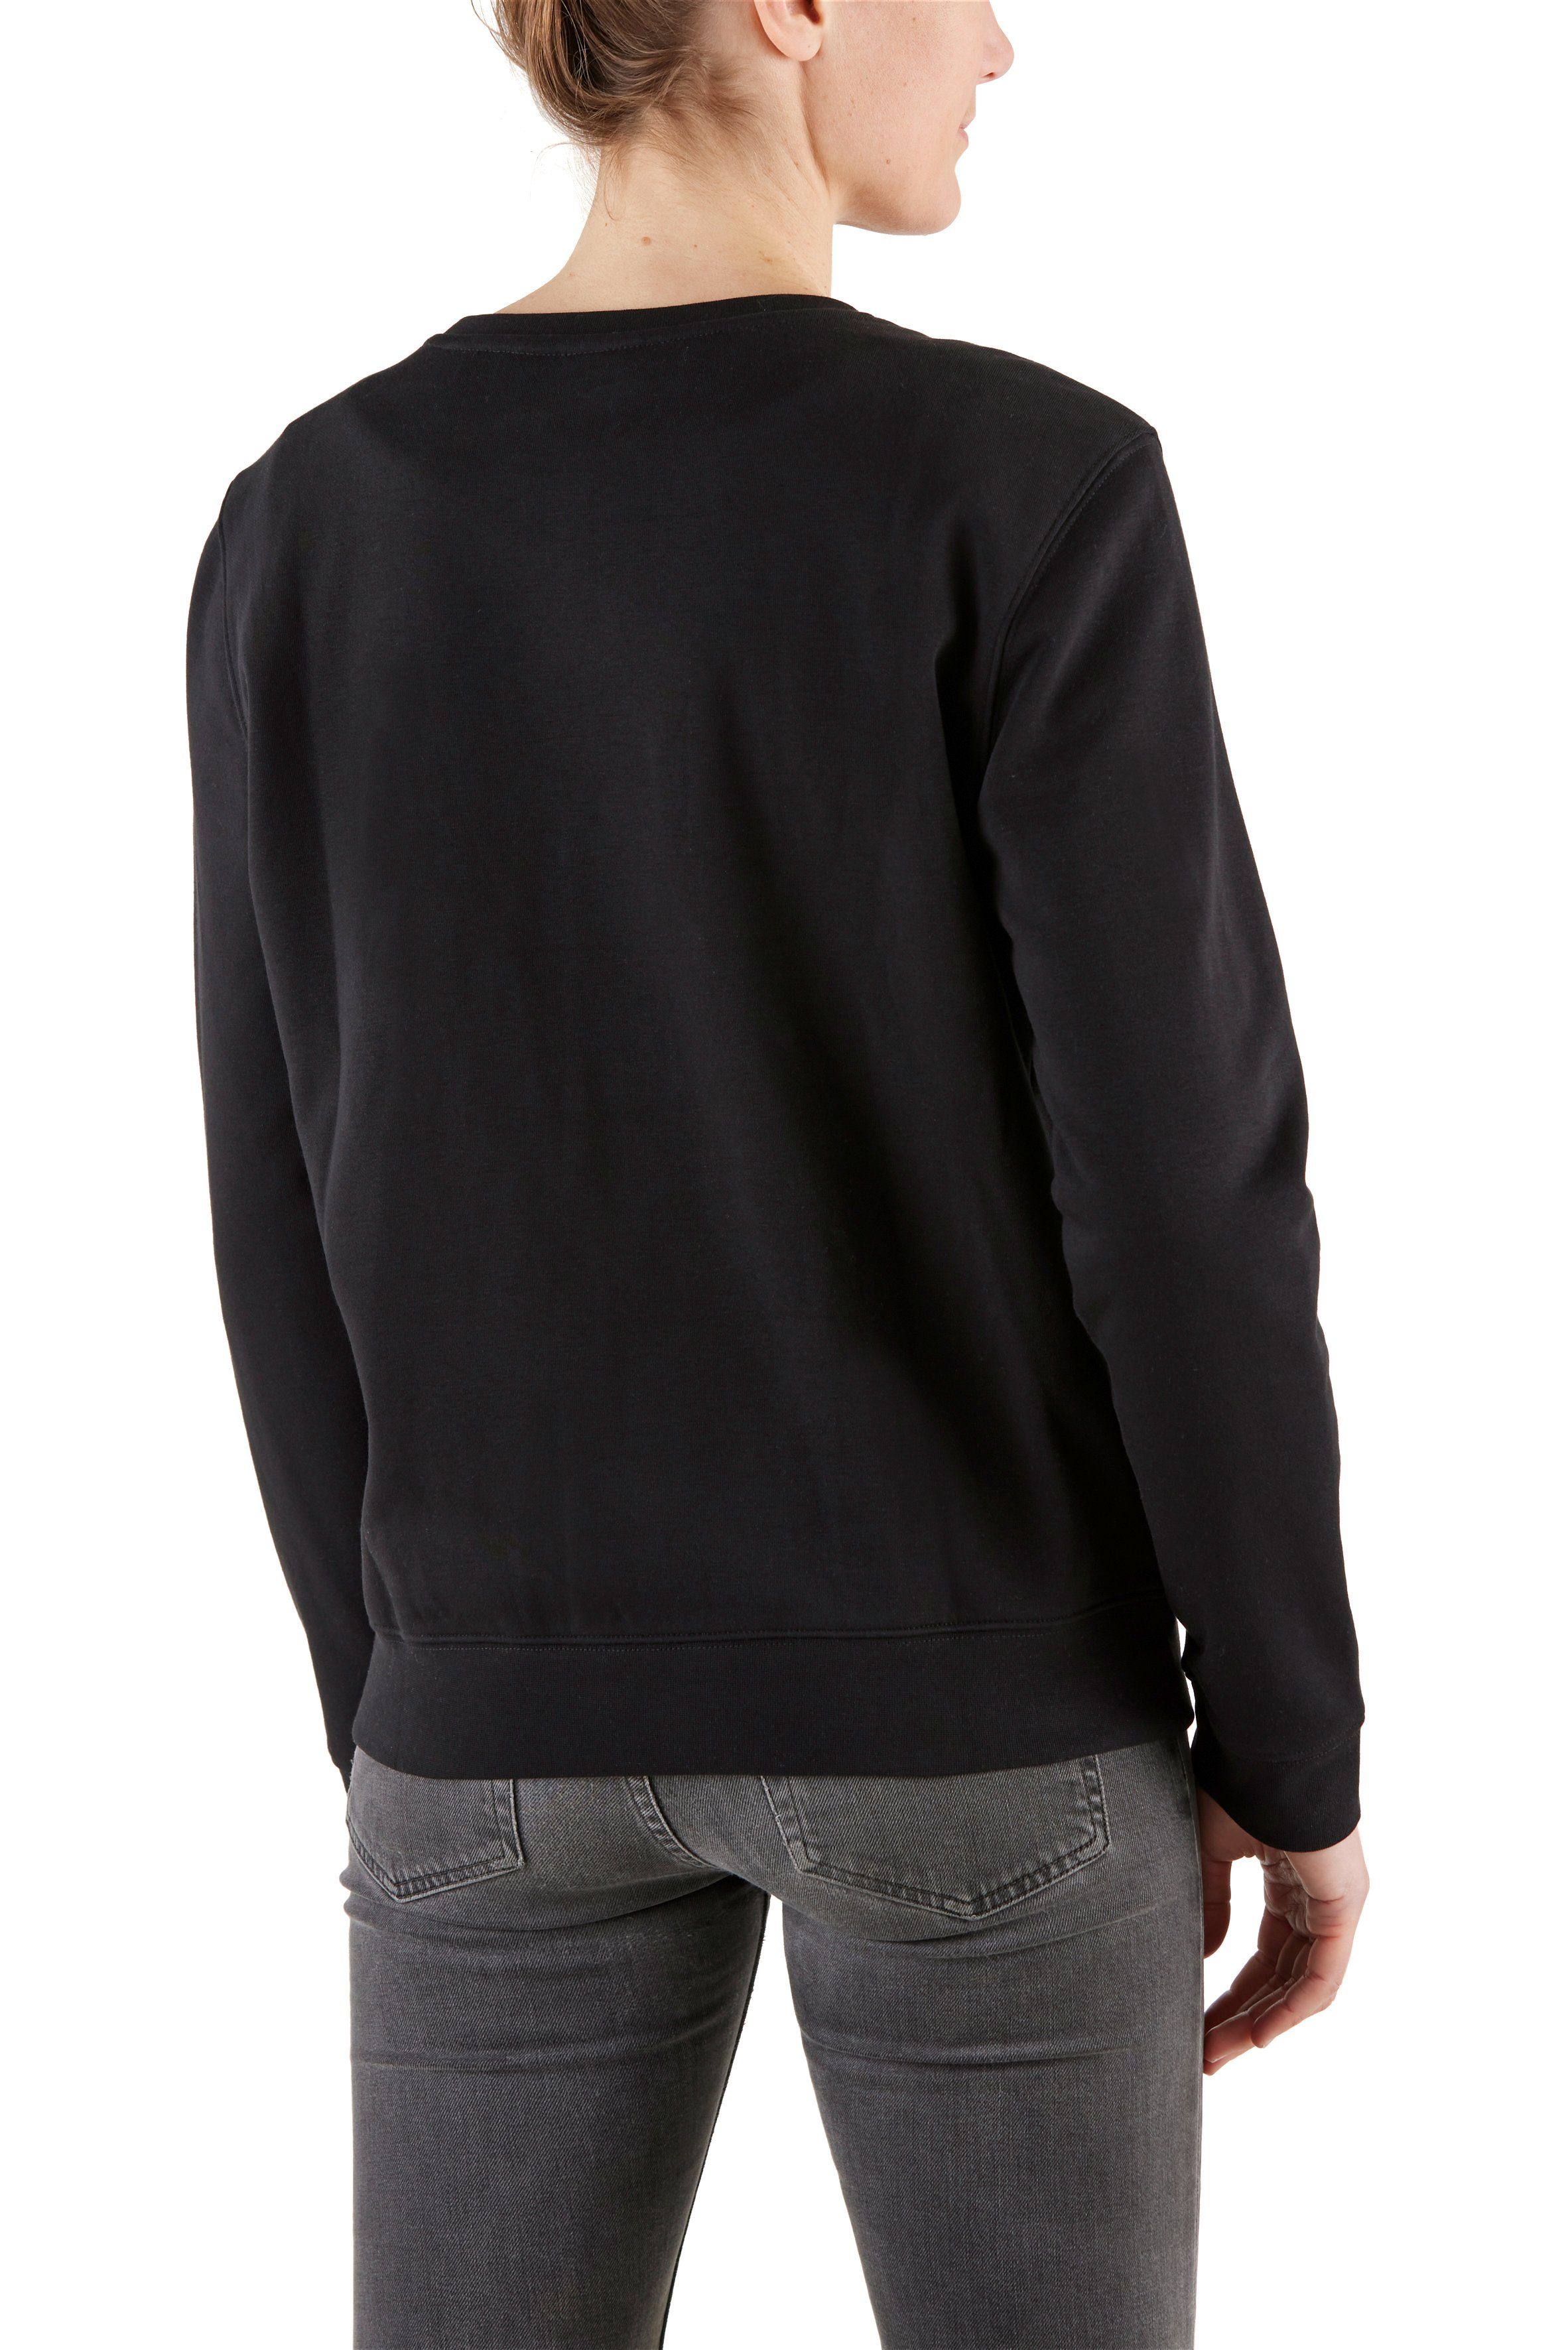 Northern Country Sweatshirt für Damen locker aus leicht trägt und BlackBeauty sich Baumwollmix, soften